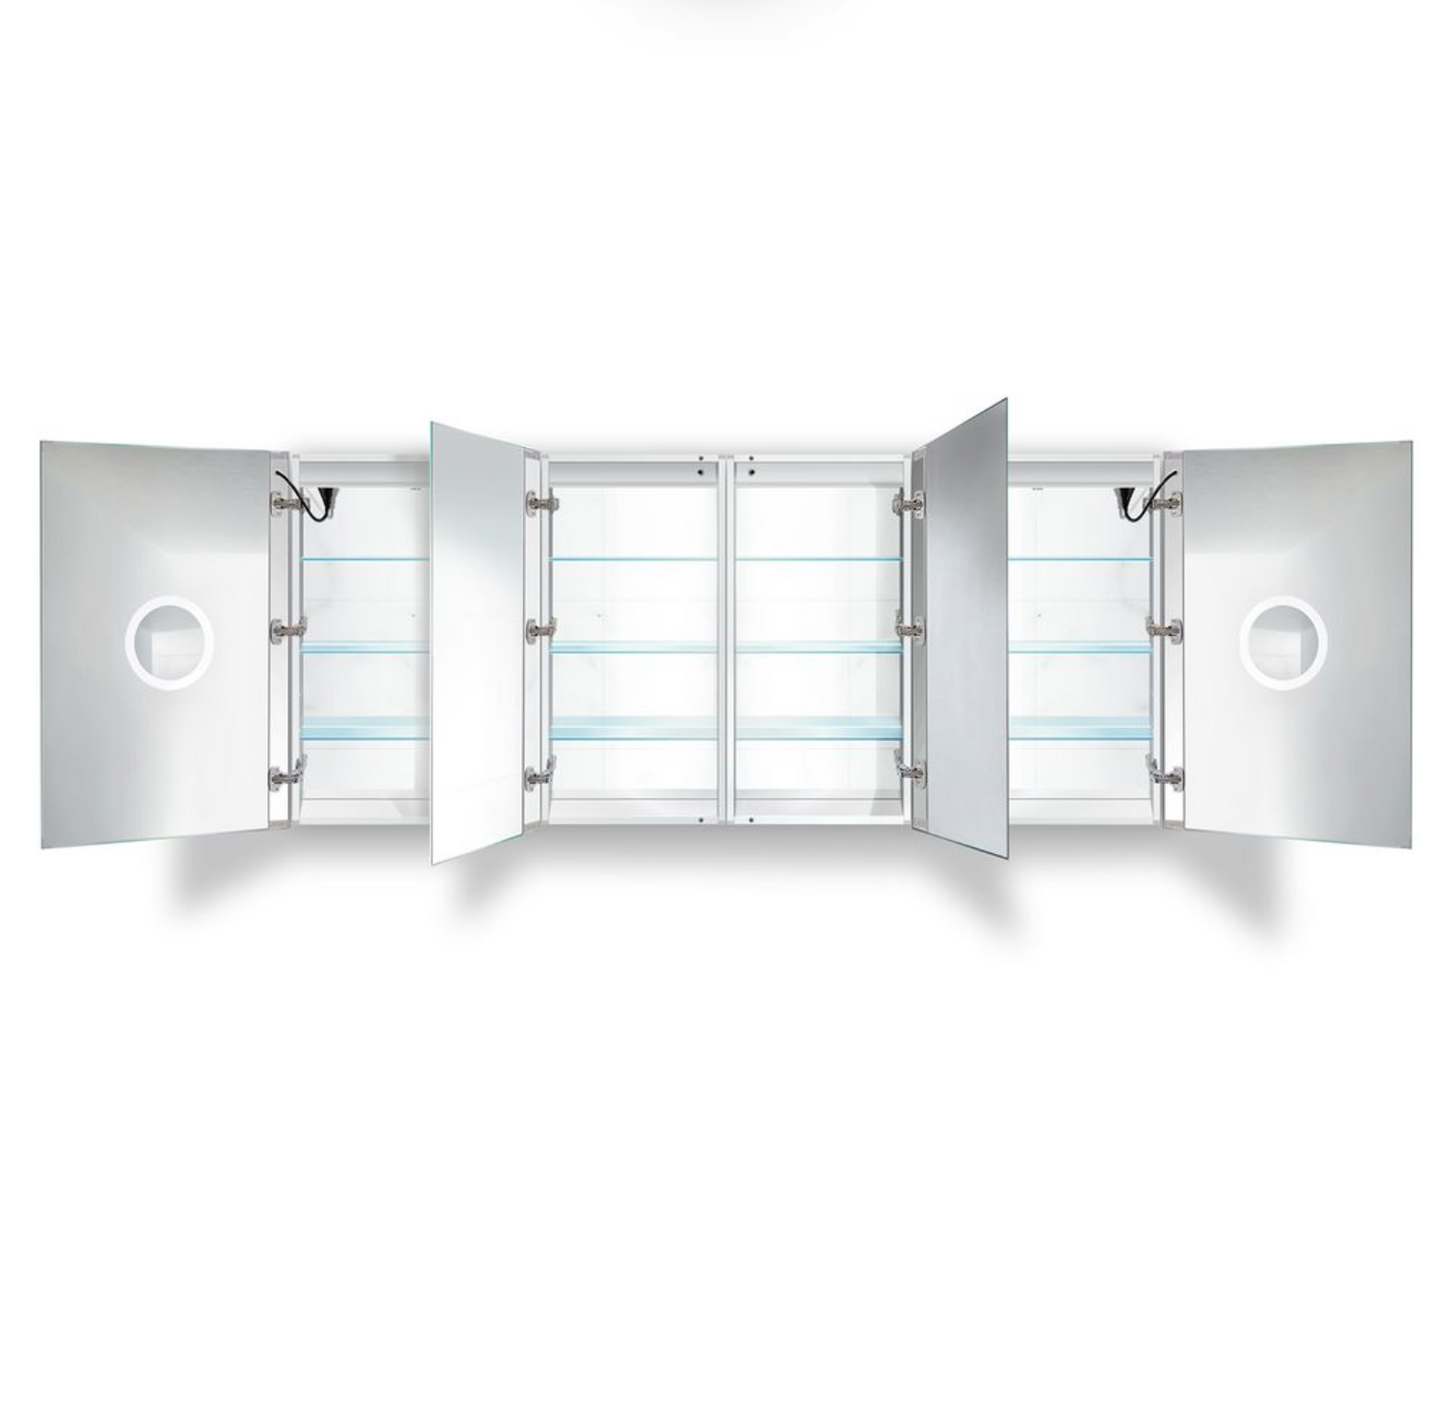 SVANGE 84 X 36 LED Lighted Mirror Medicine Cabinet, Defogger included